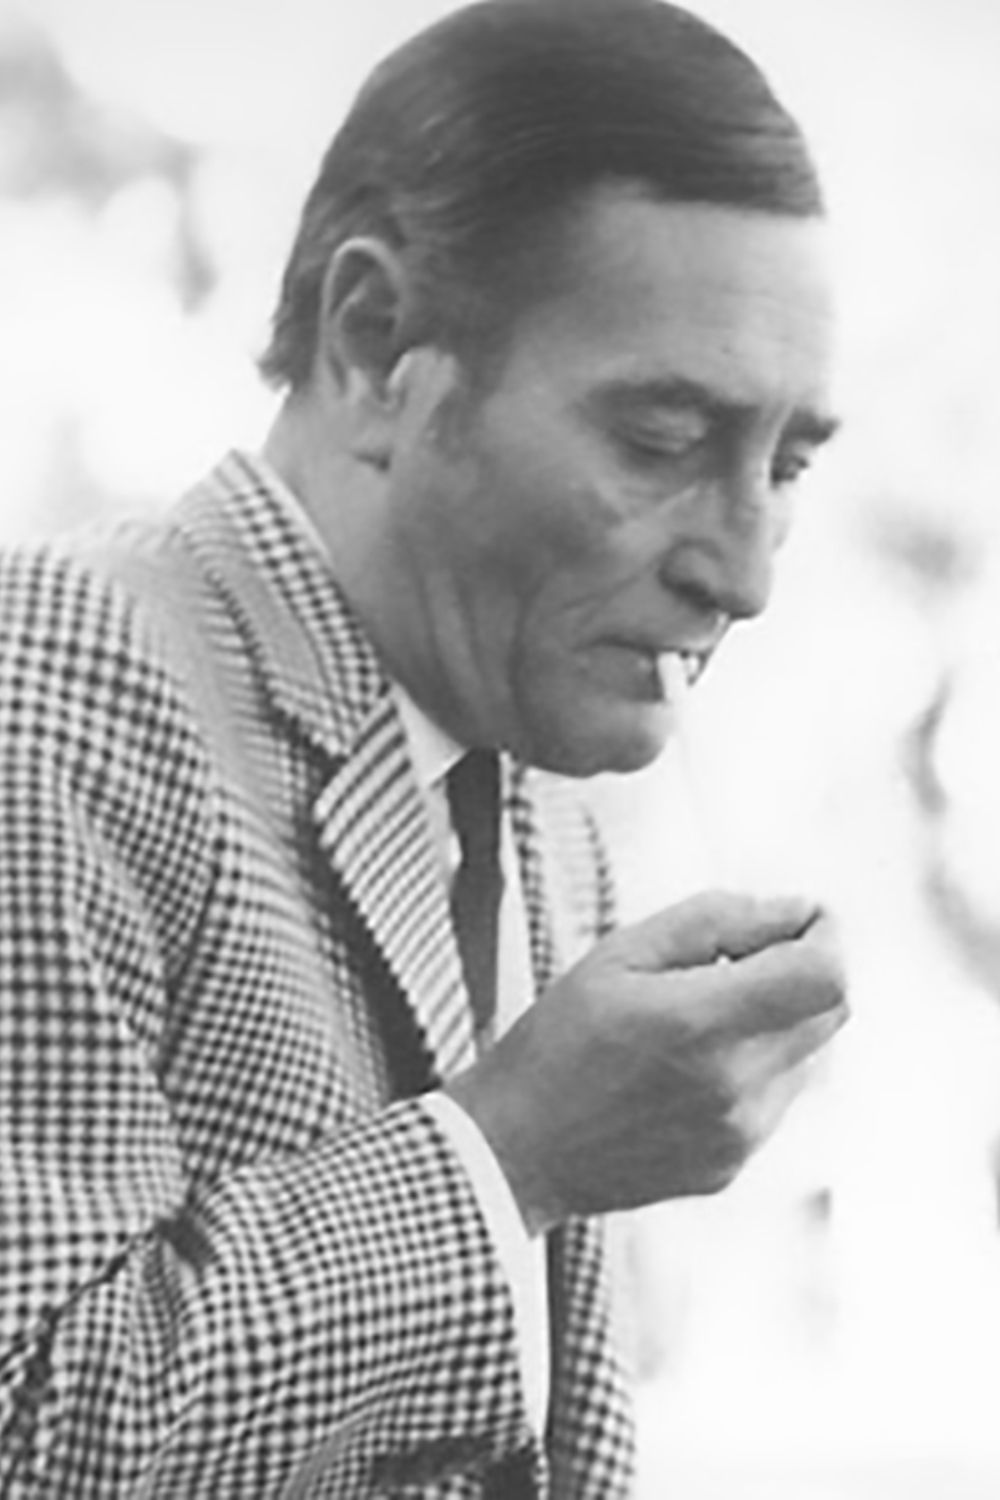 Homero Expósito, Argentine Tango poet and lyricist.